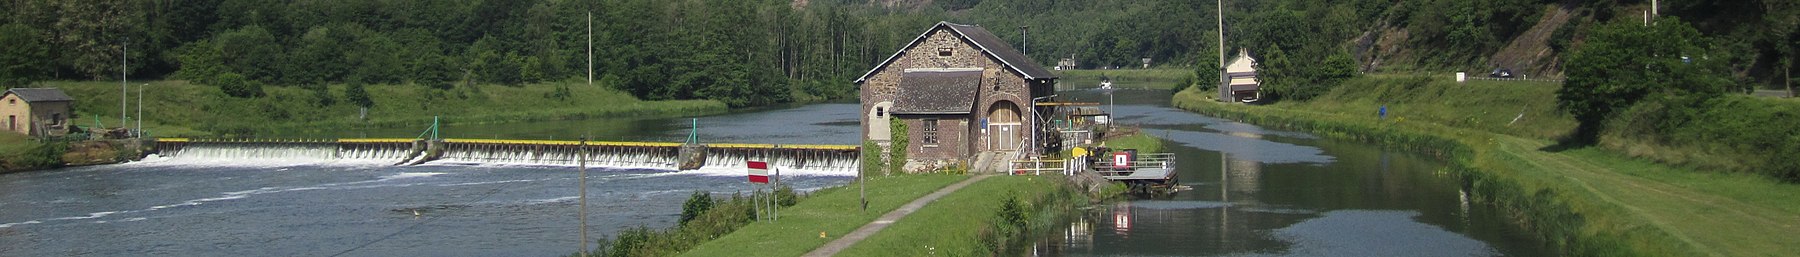 Fumay barrage sur la Meuse banner.jpg